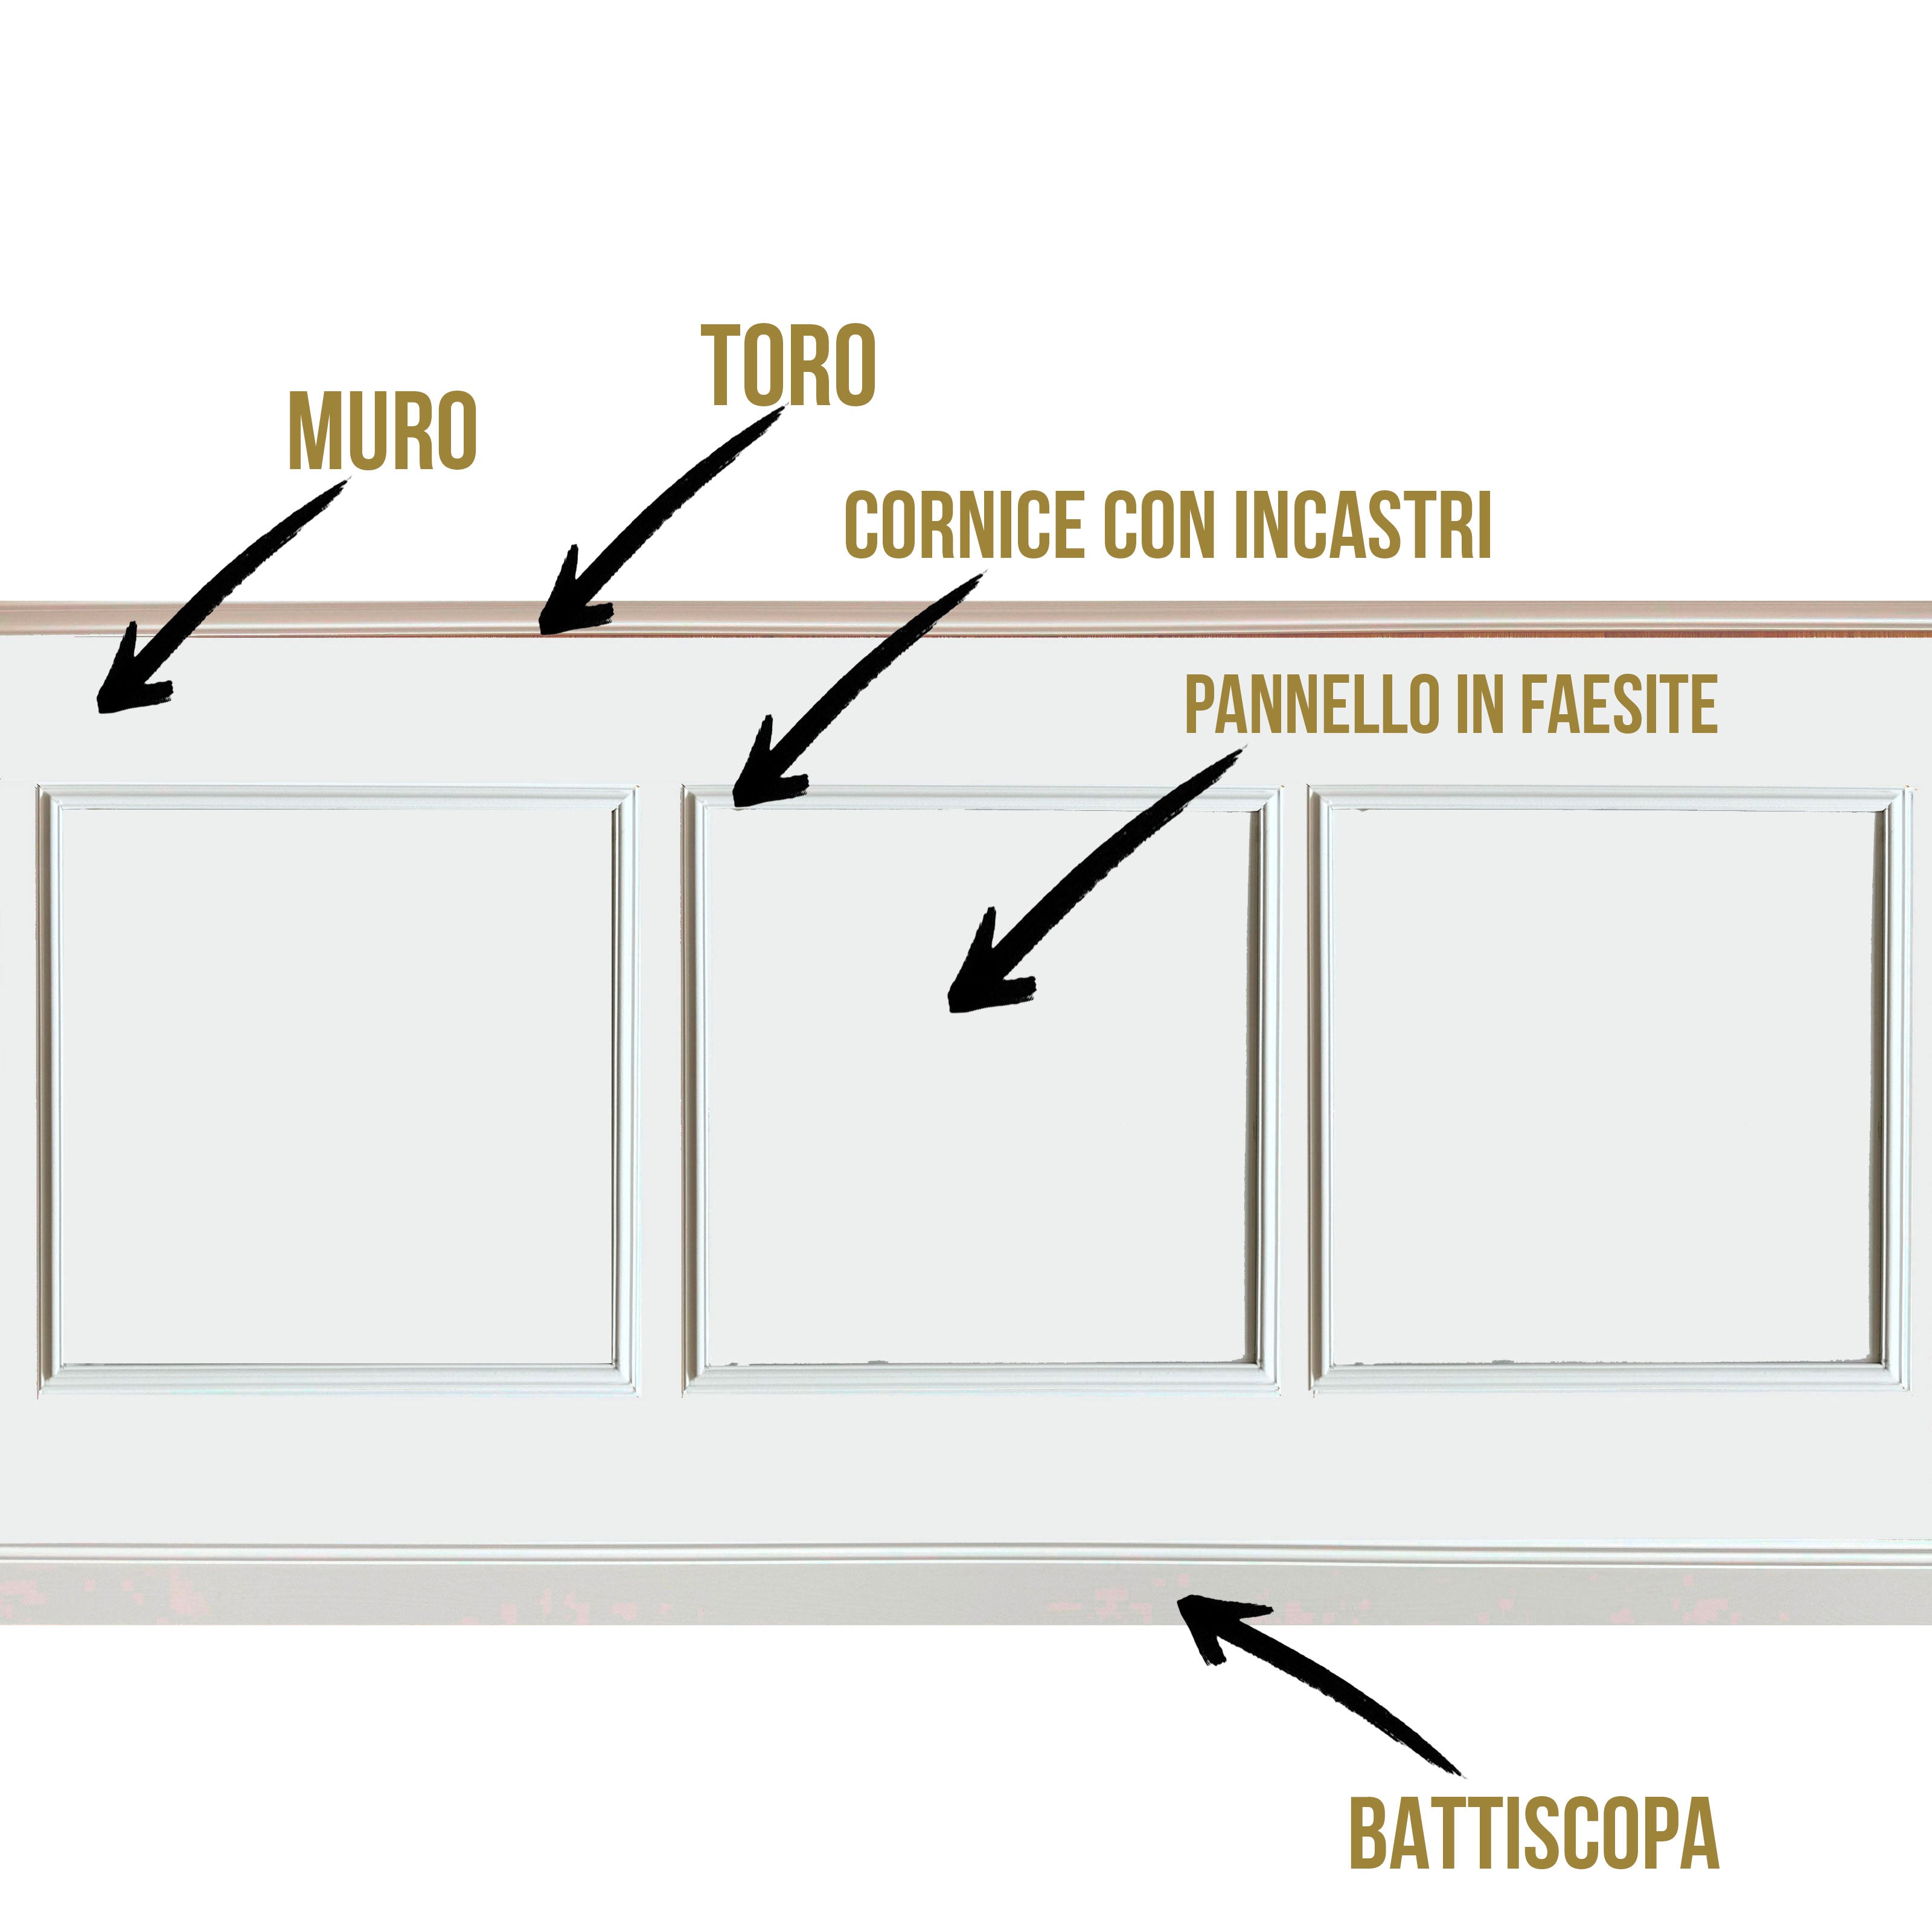 Kit 2ml di Boiserie in legno MASSICCIO (200x100cm) laccato bianco inclusi PANNELLI 60x60cm Eternal Parquet